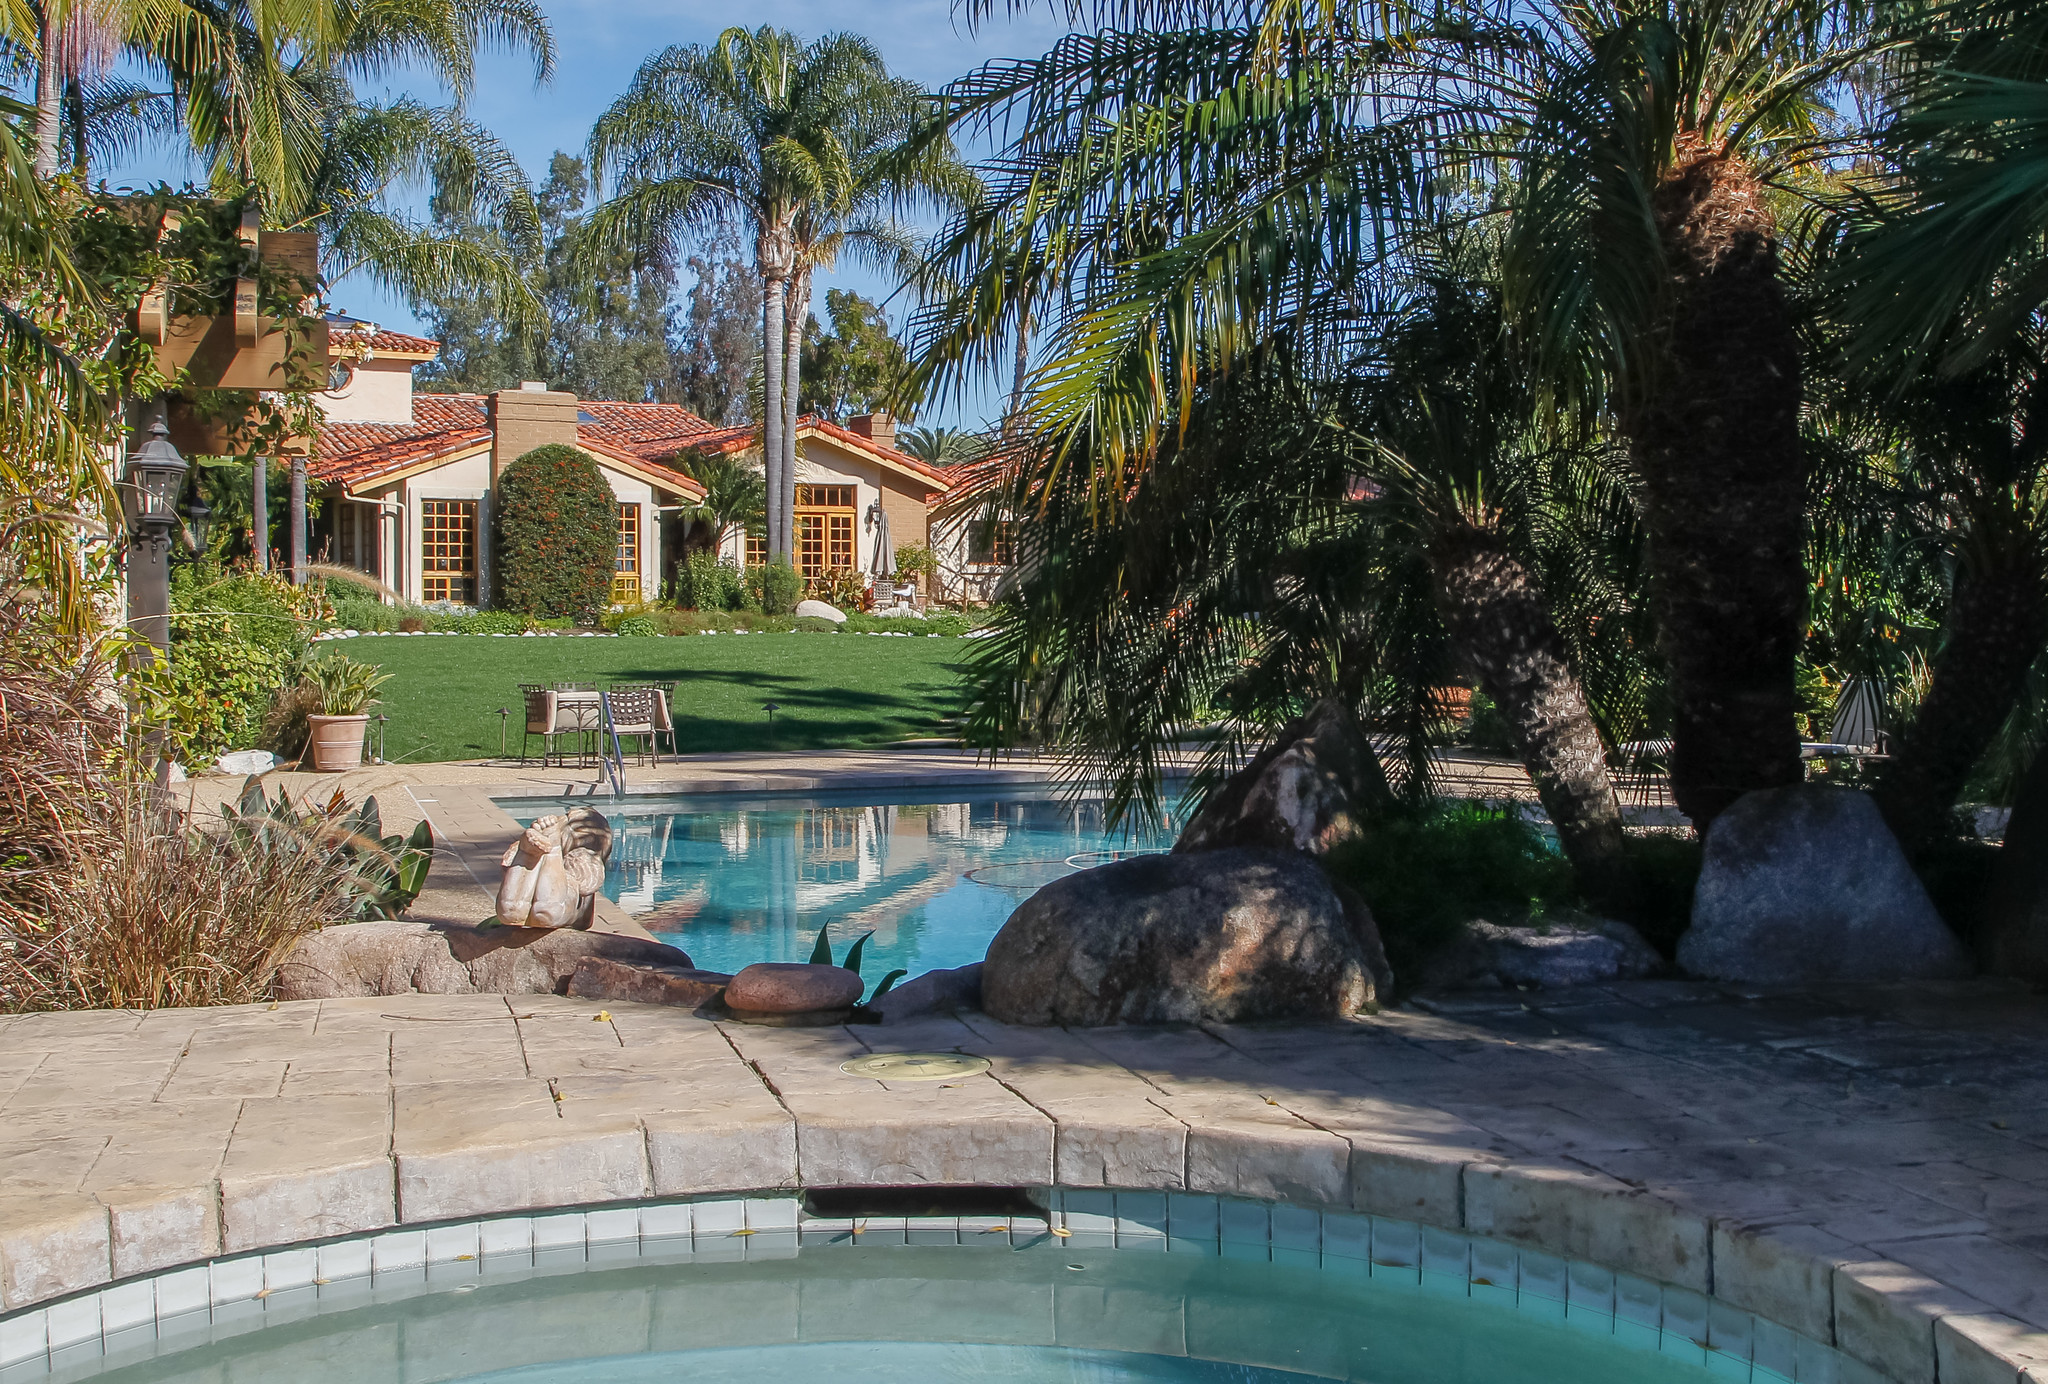 San Diego home median price starts year under $500K